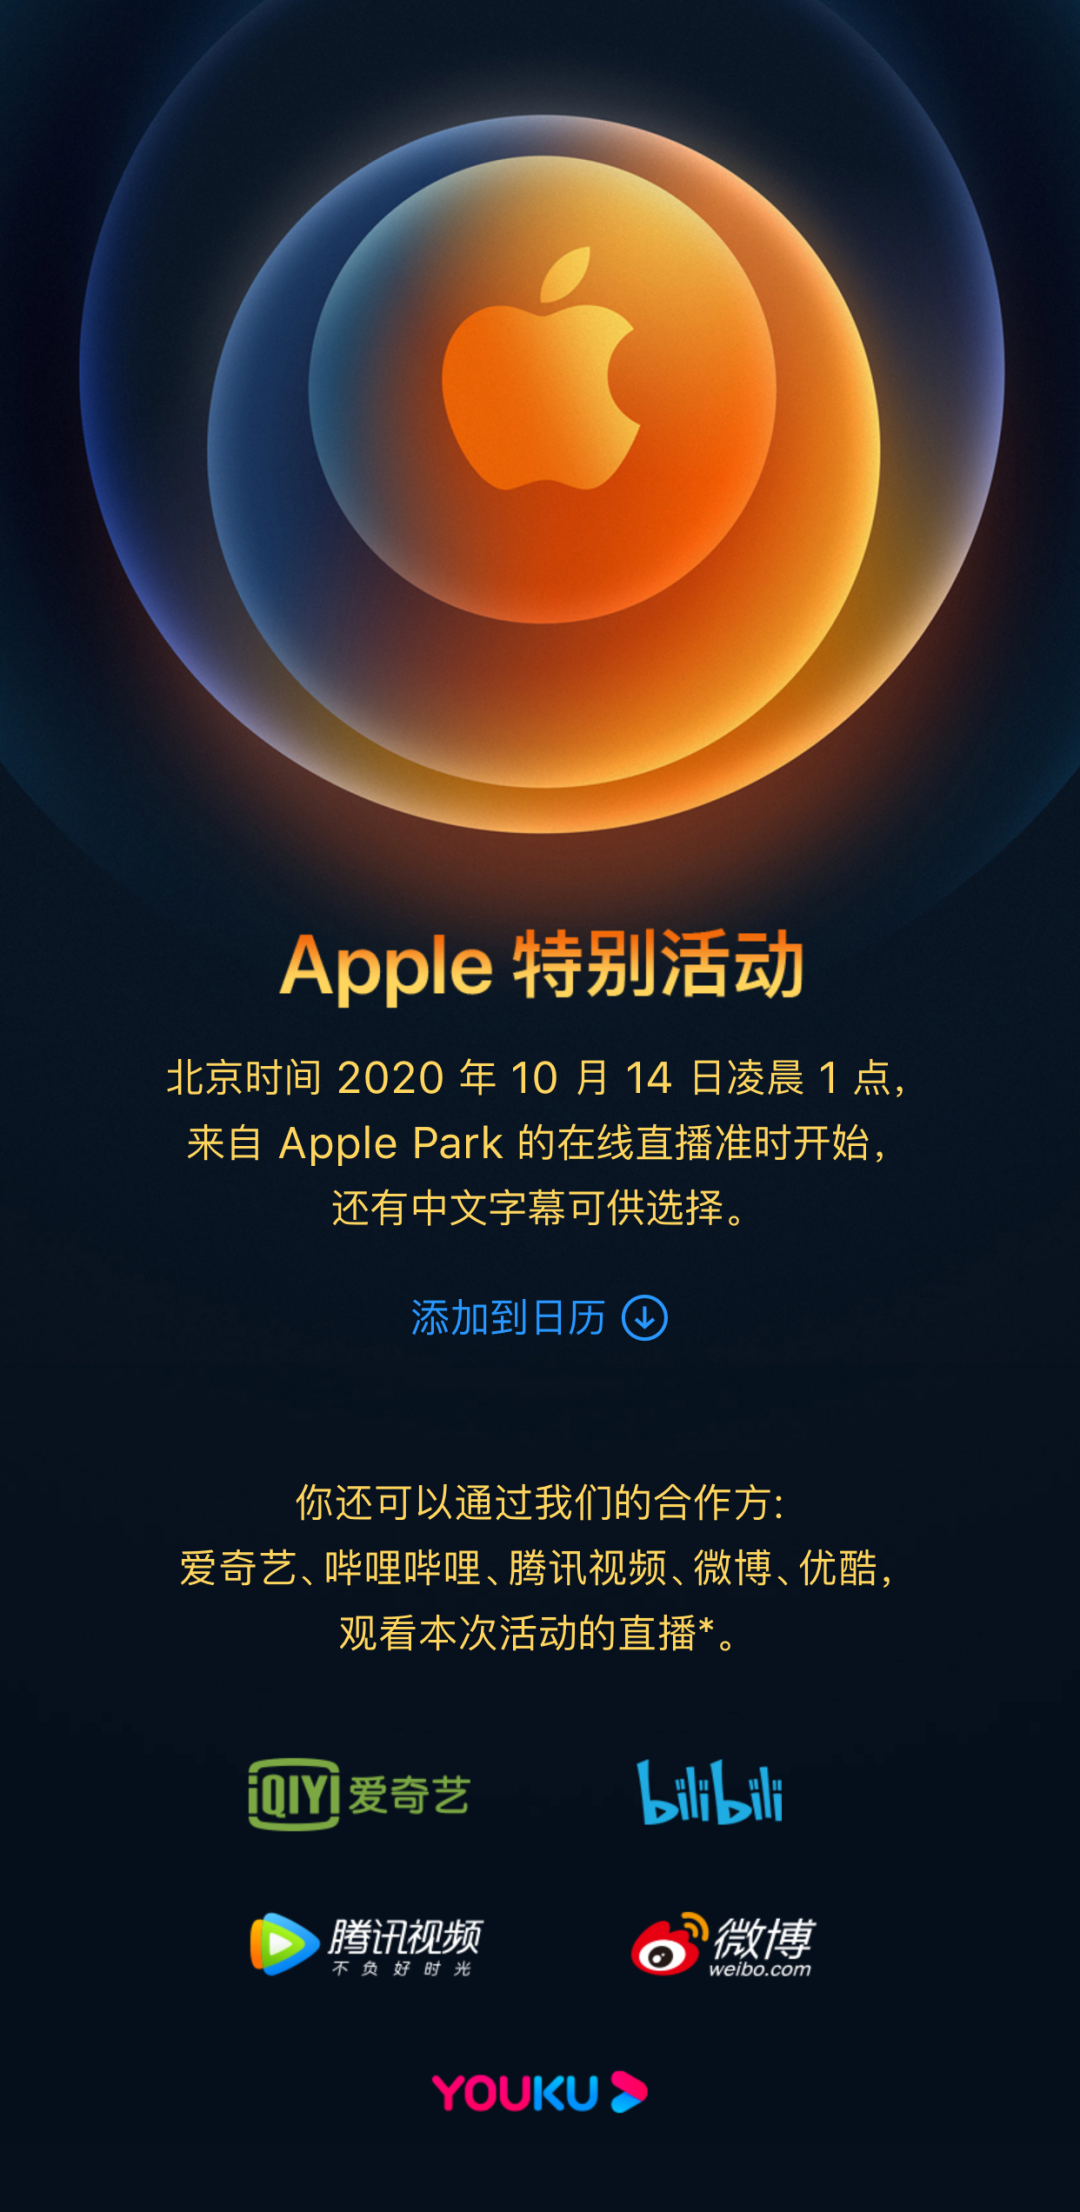 iphone12 终于要来了!我们10月14日苹果发布会见,邀请函详细解读